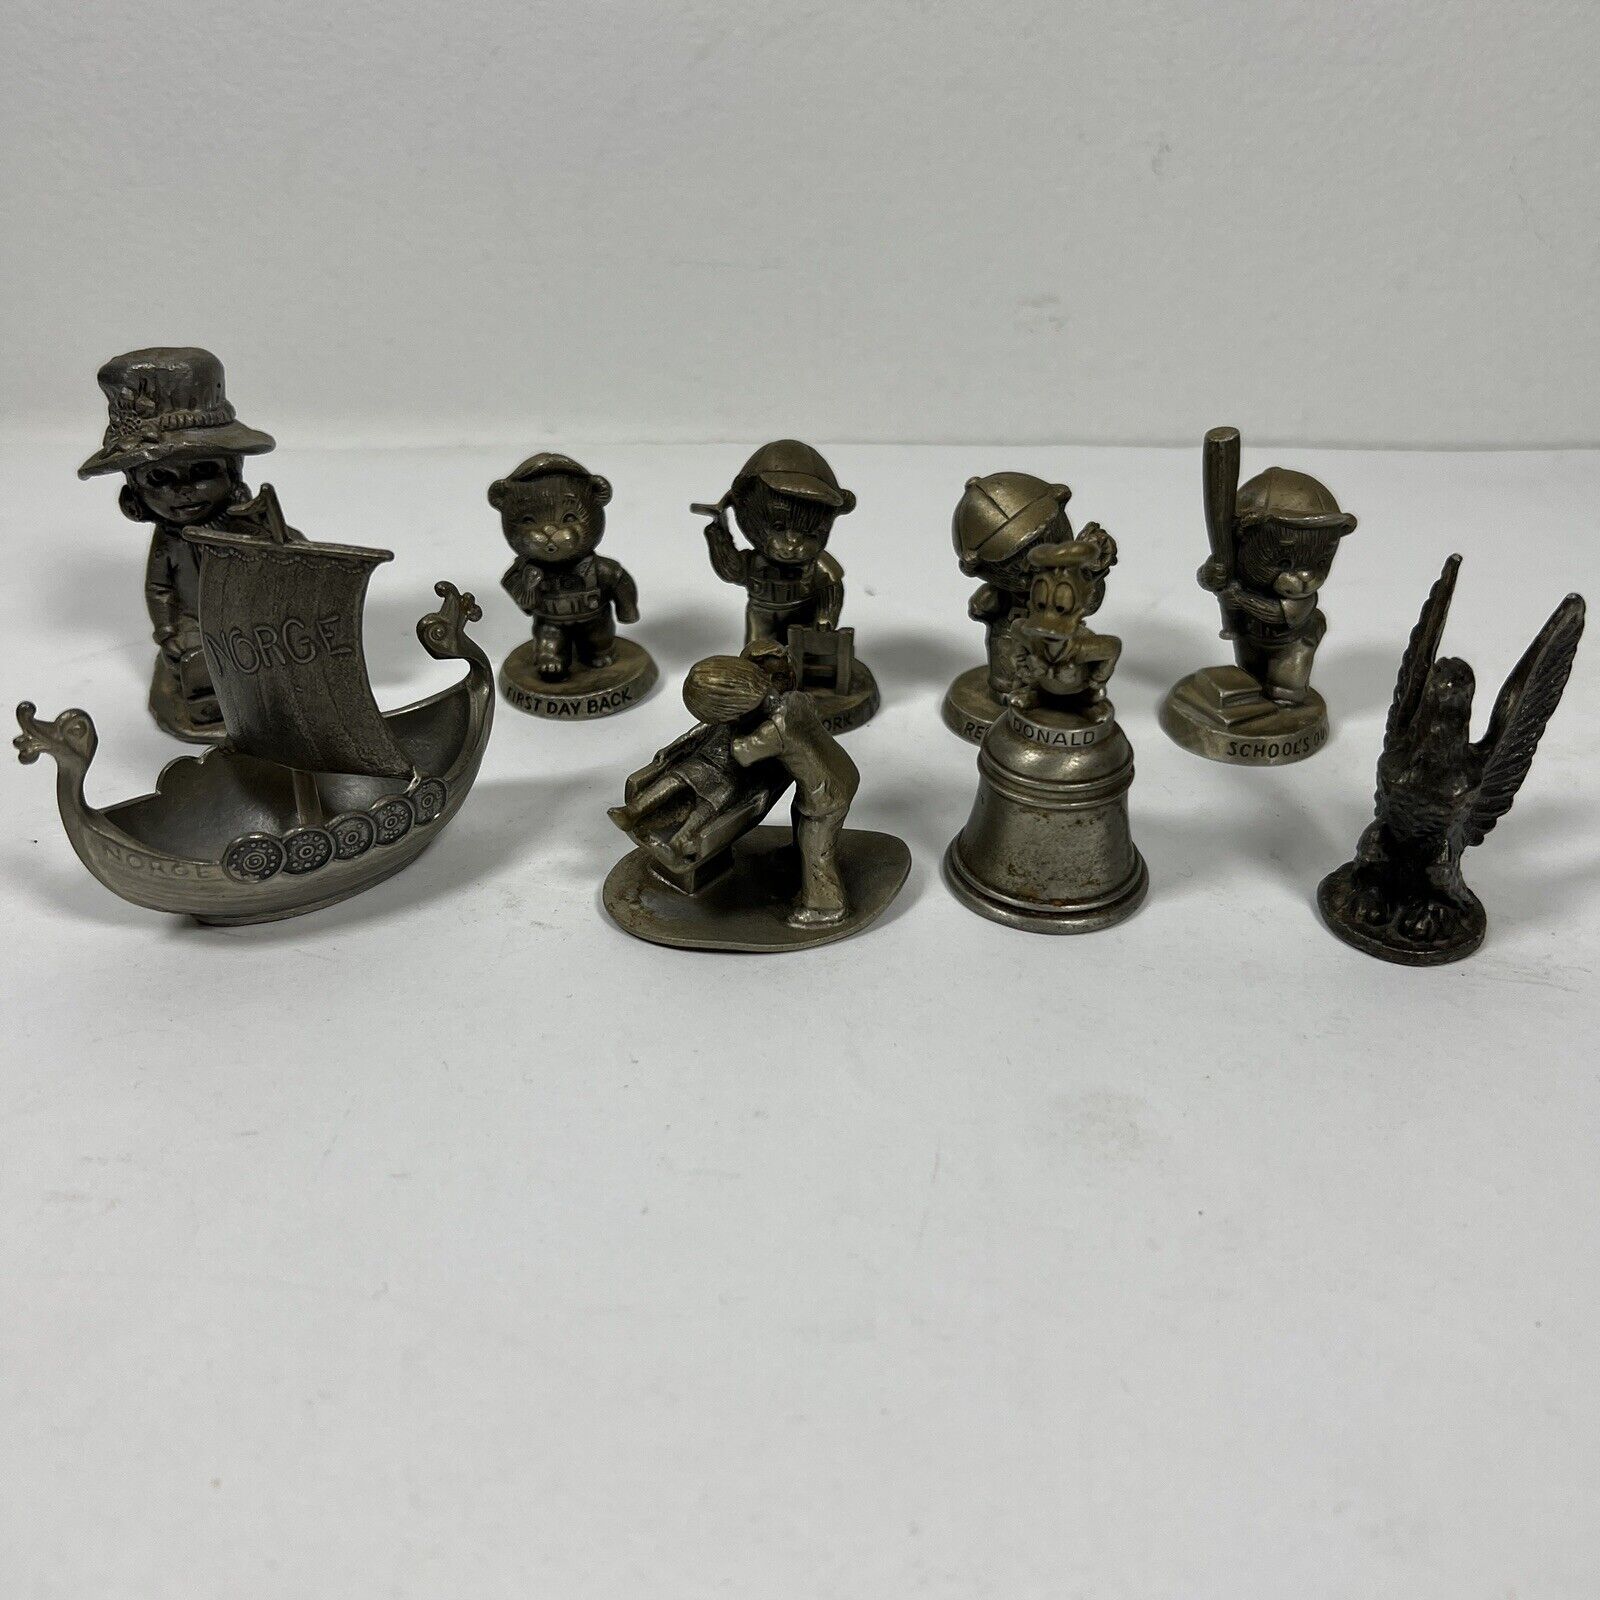 Lot of 9 Pewter Figurines Metal Baseball Avon Disney Hudson Vintage Made in USA